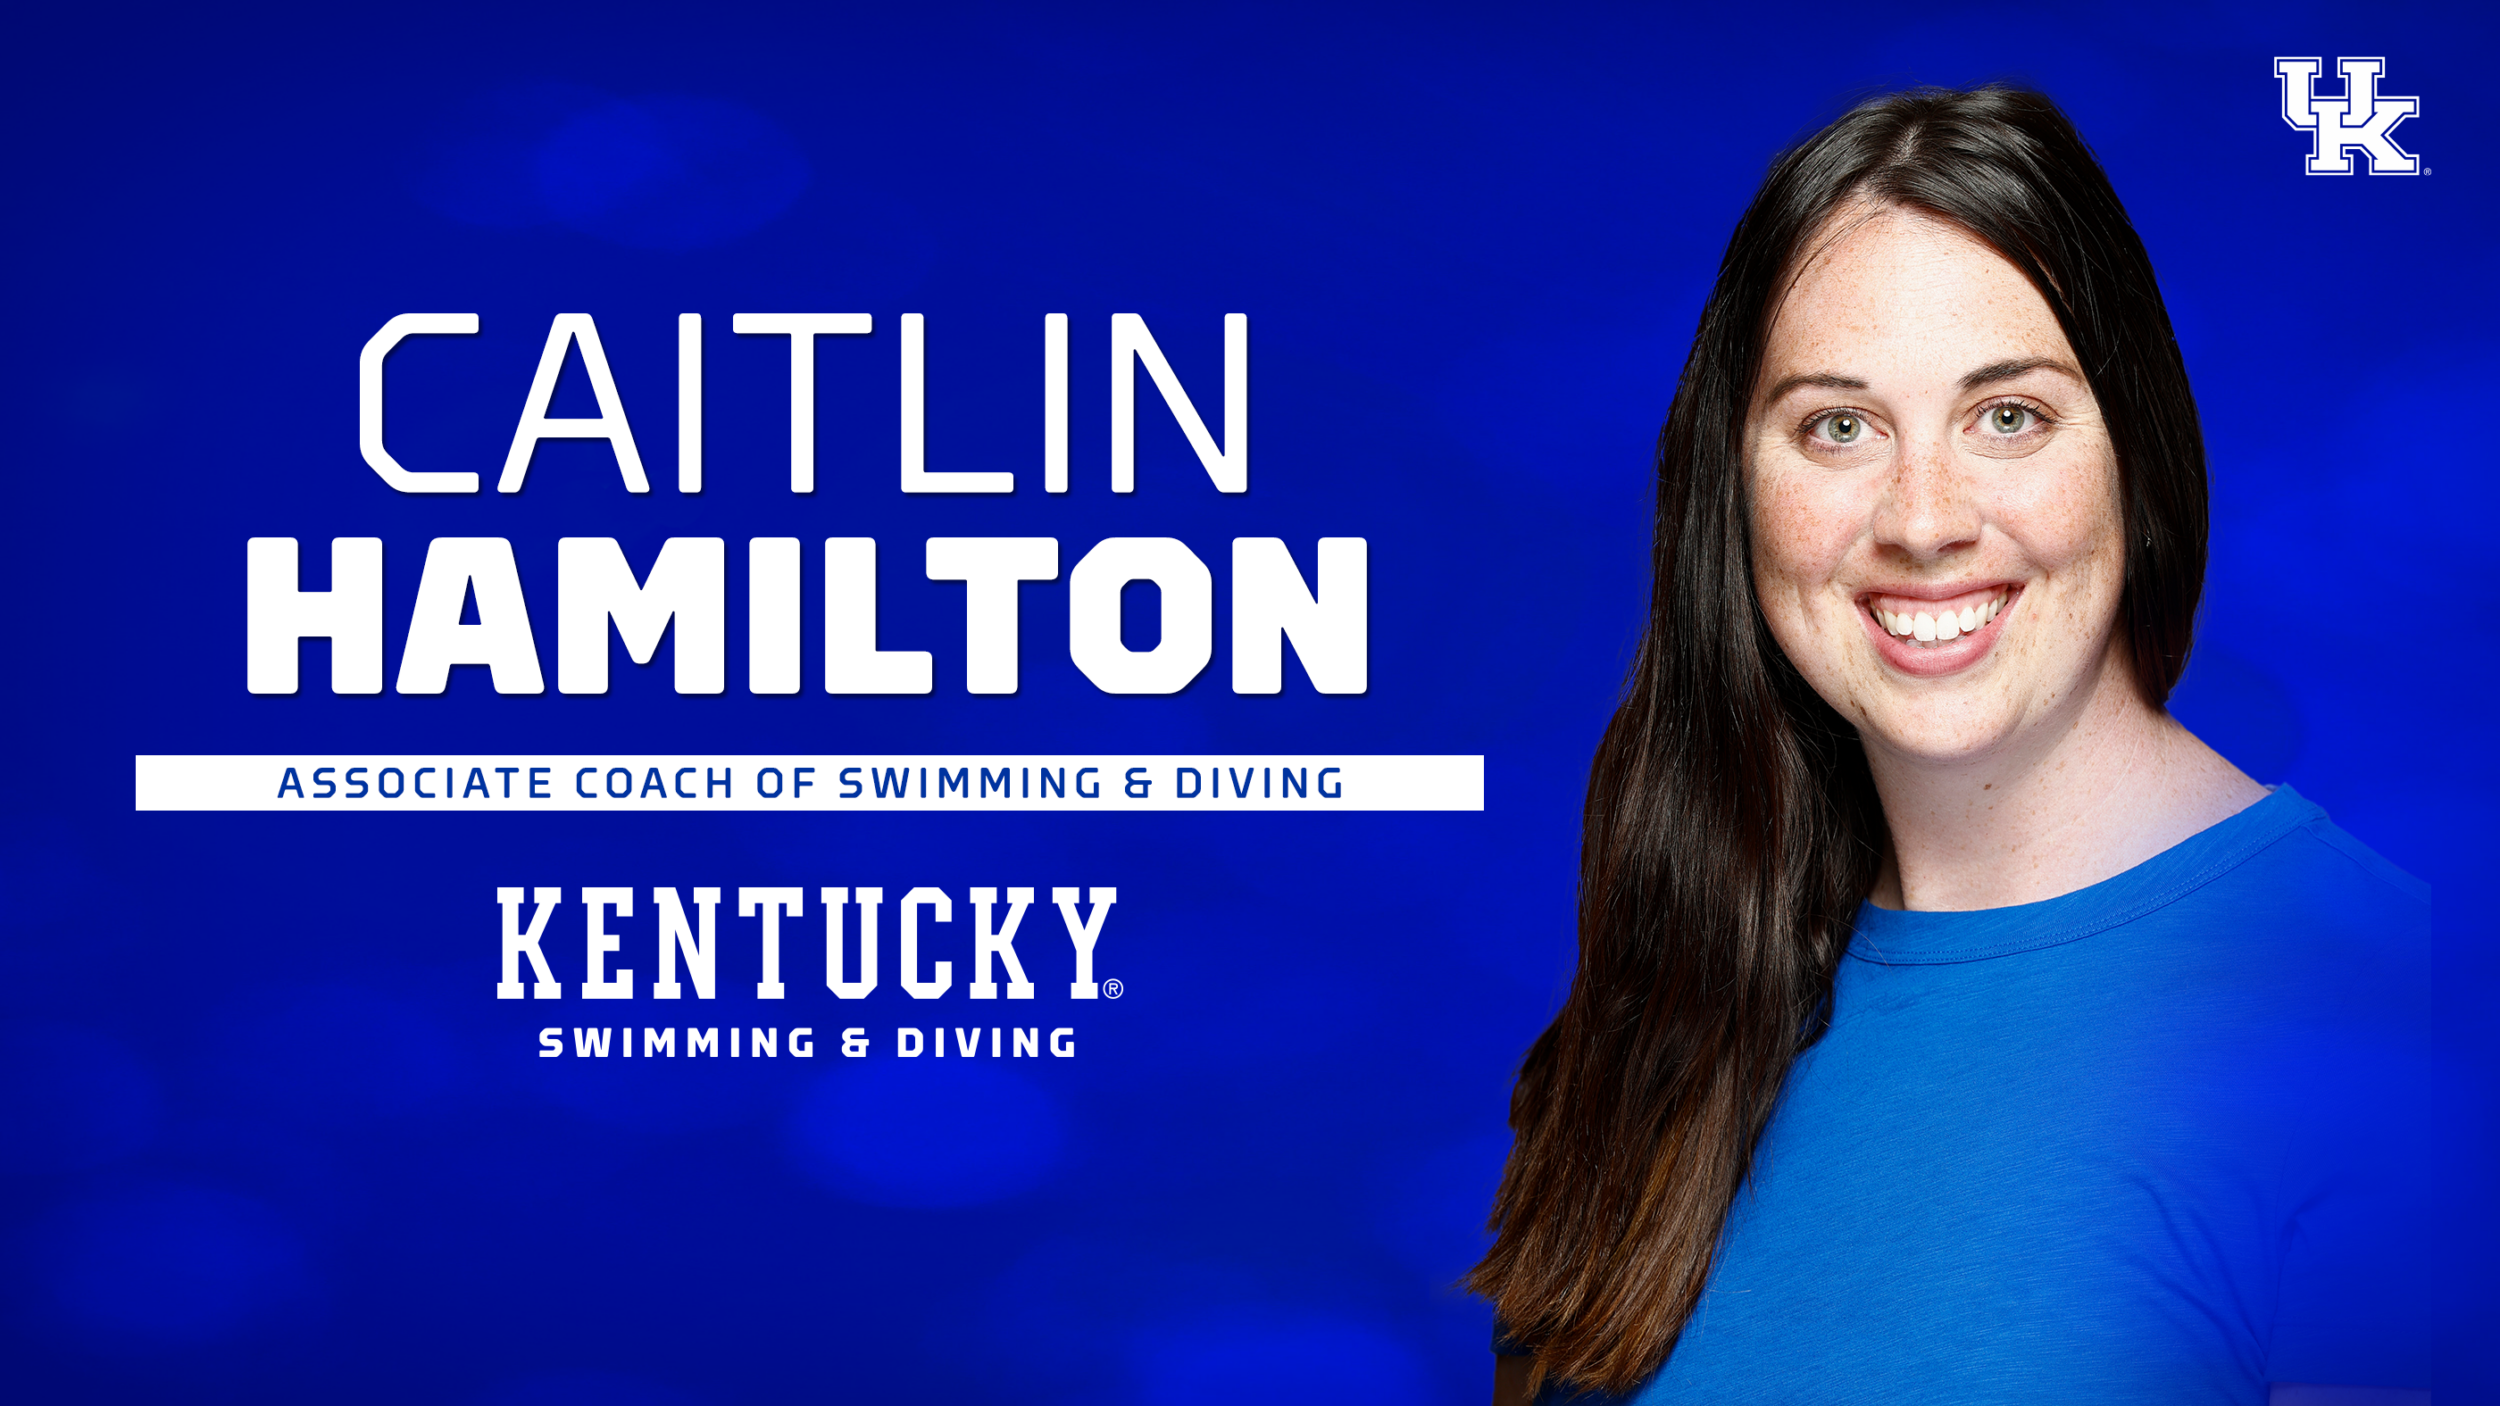 Caitlin Hamilton Joins UK Swim & Dive as Associate Coach